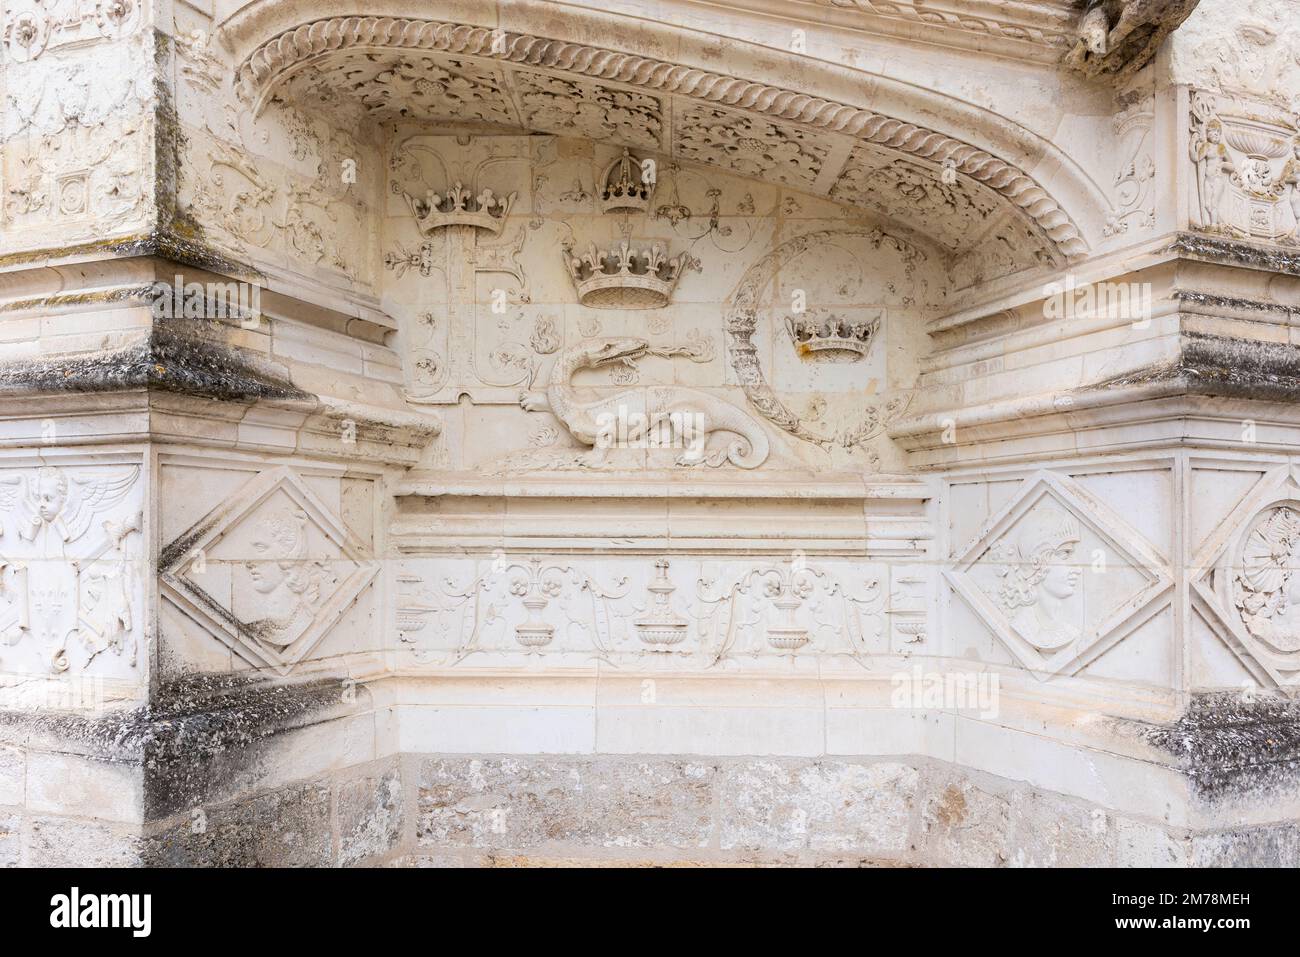 Dettagli di un bassorilievo del Castello reale di Blois. La salamandra era il simbolo del re Francesco il primo. Foto Stock